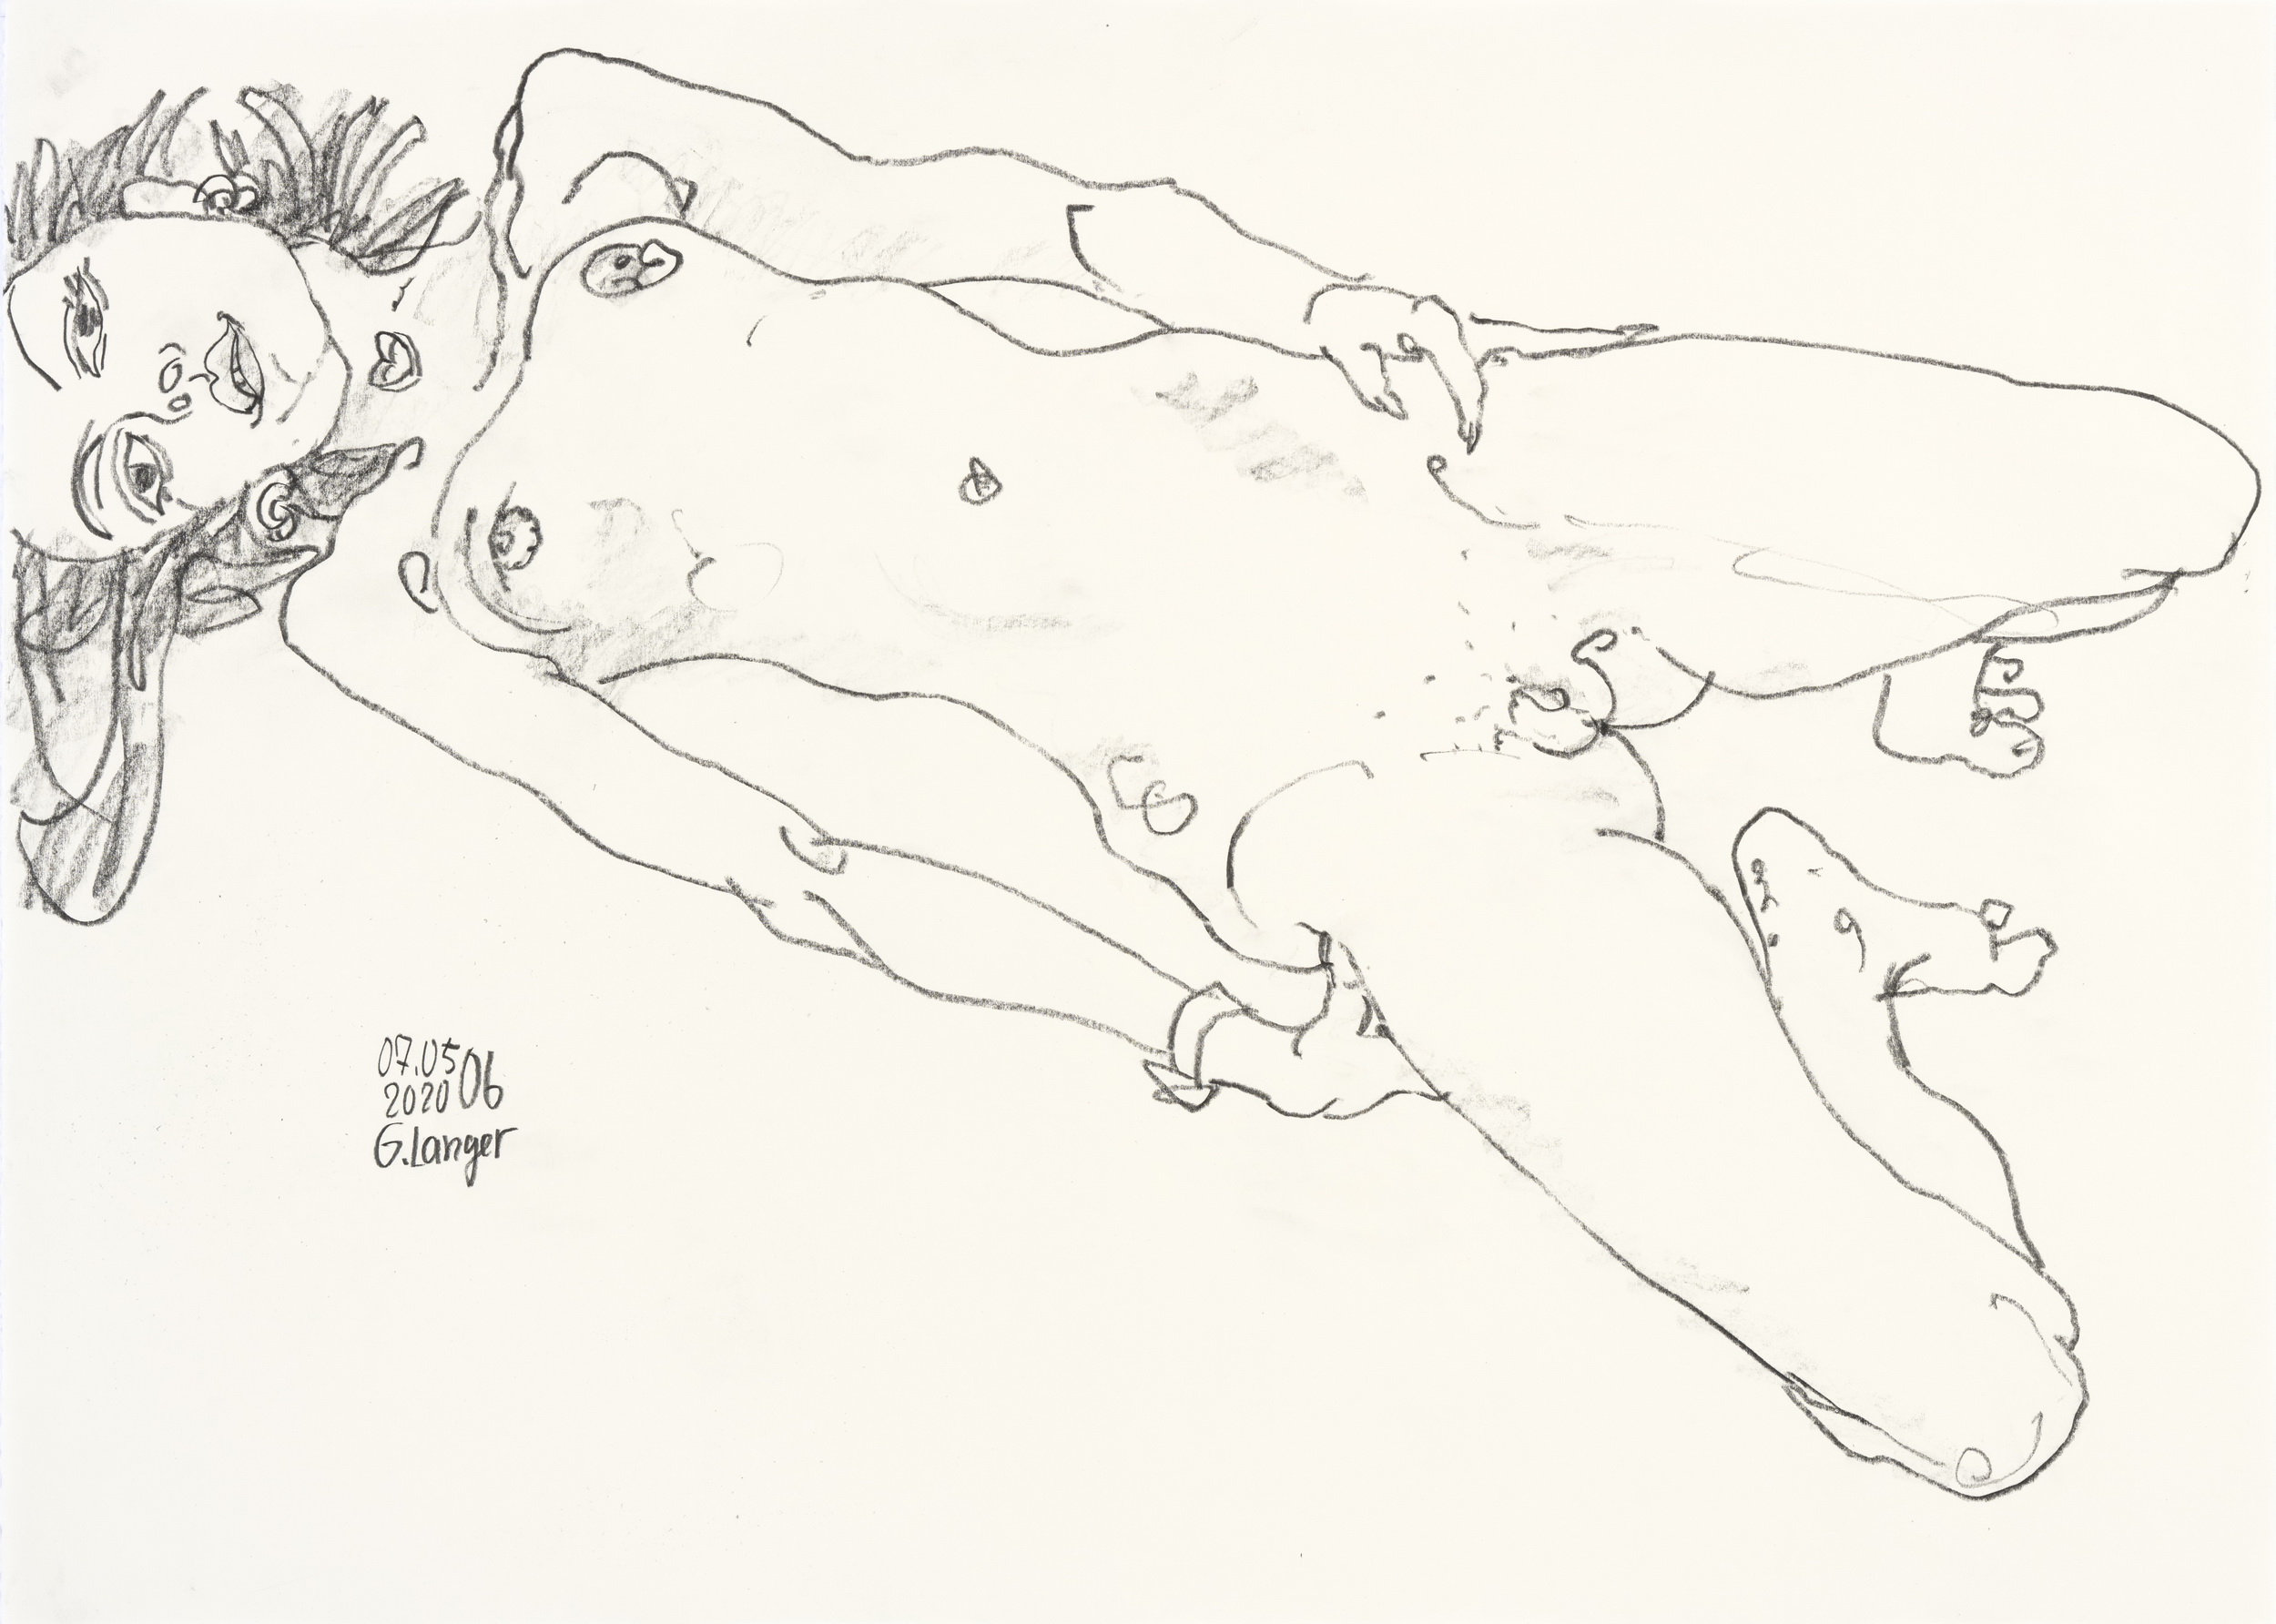 Gunter Langer, Liegendes nacktes Mädchen, 2020, Zeichenpapier, 51 x 70 cm